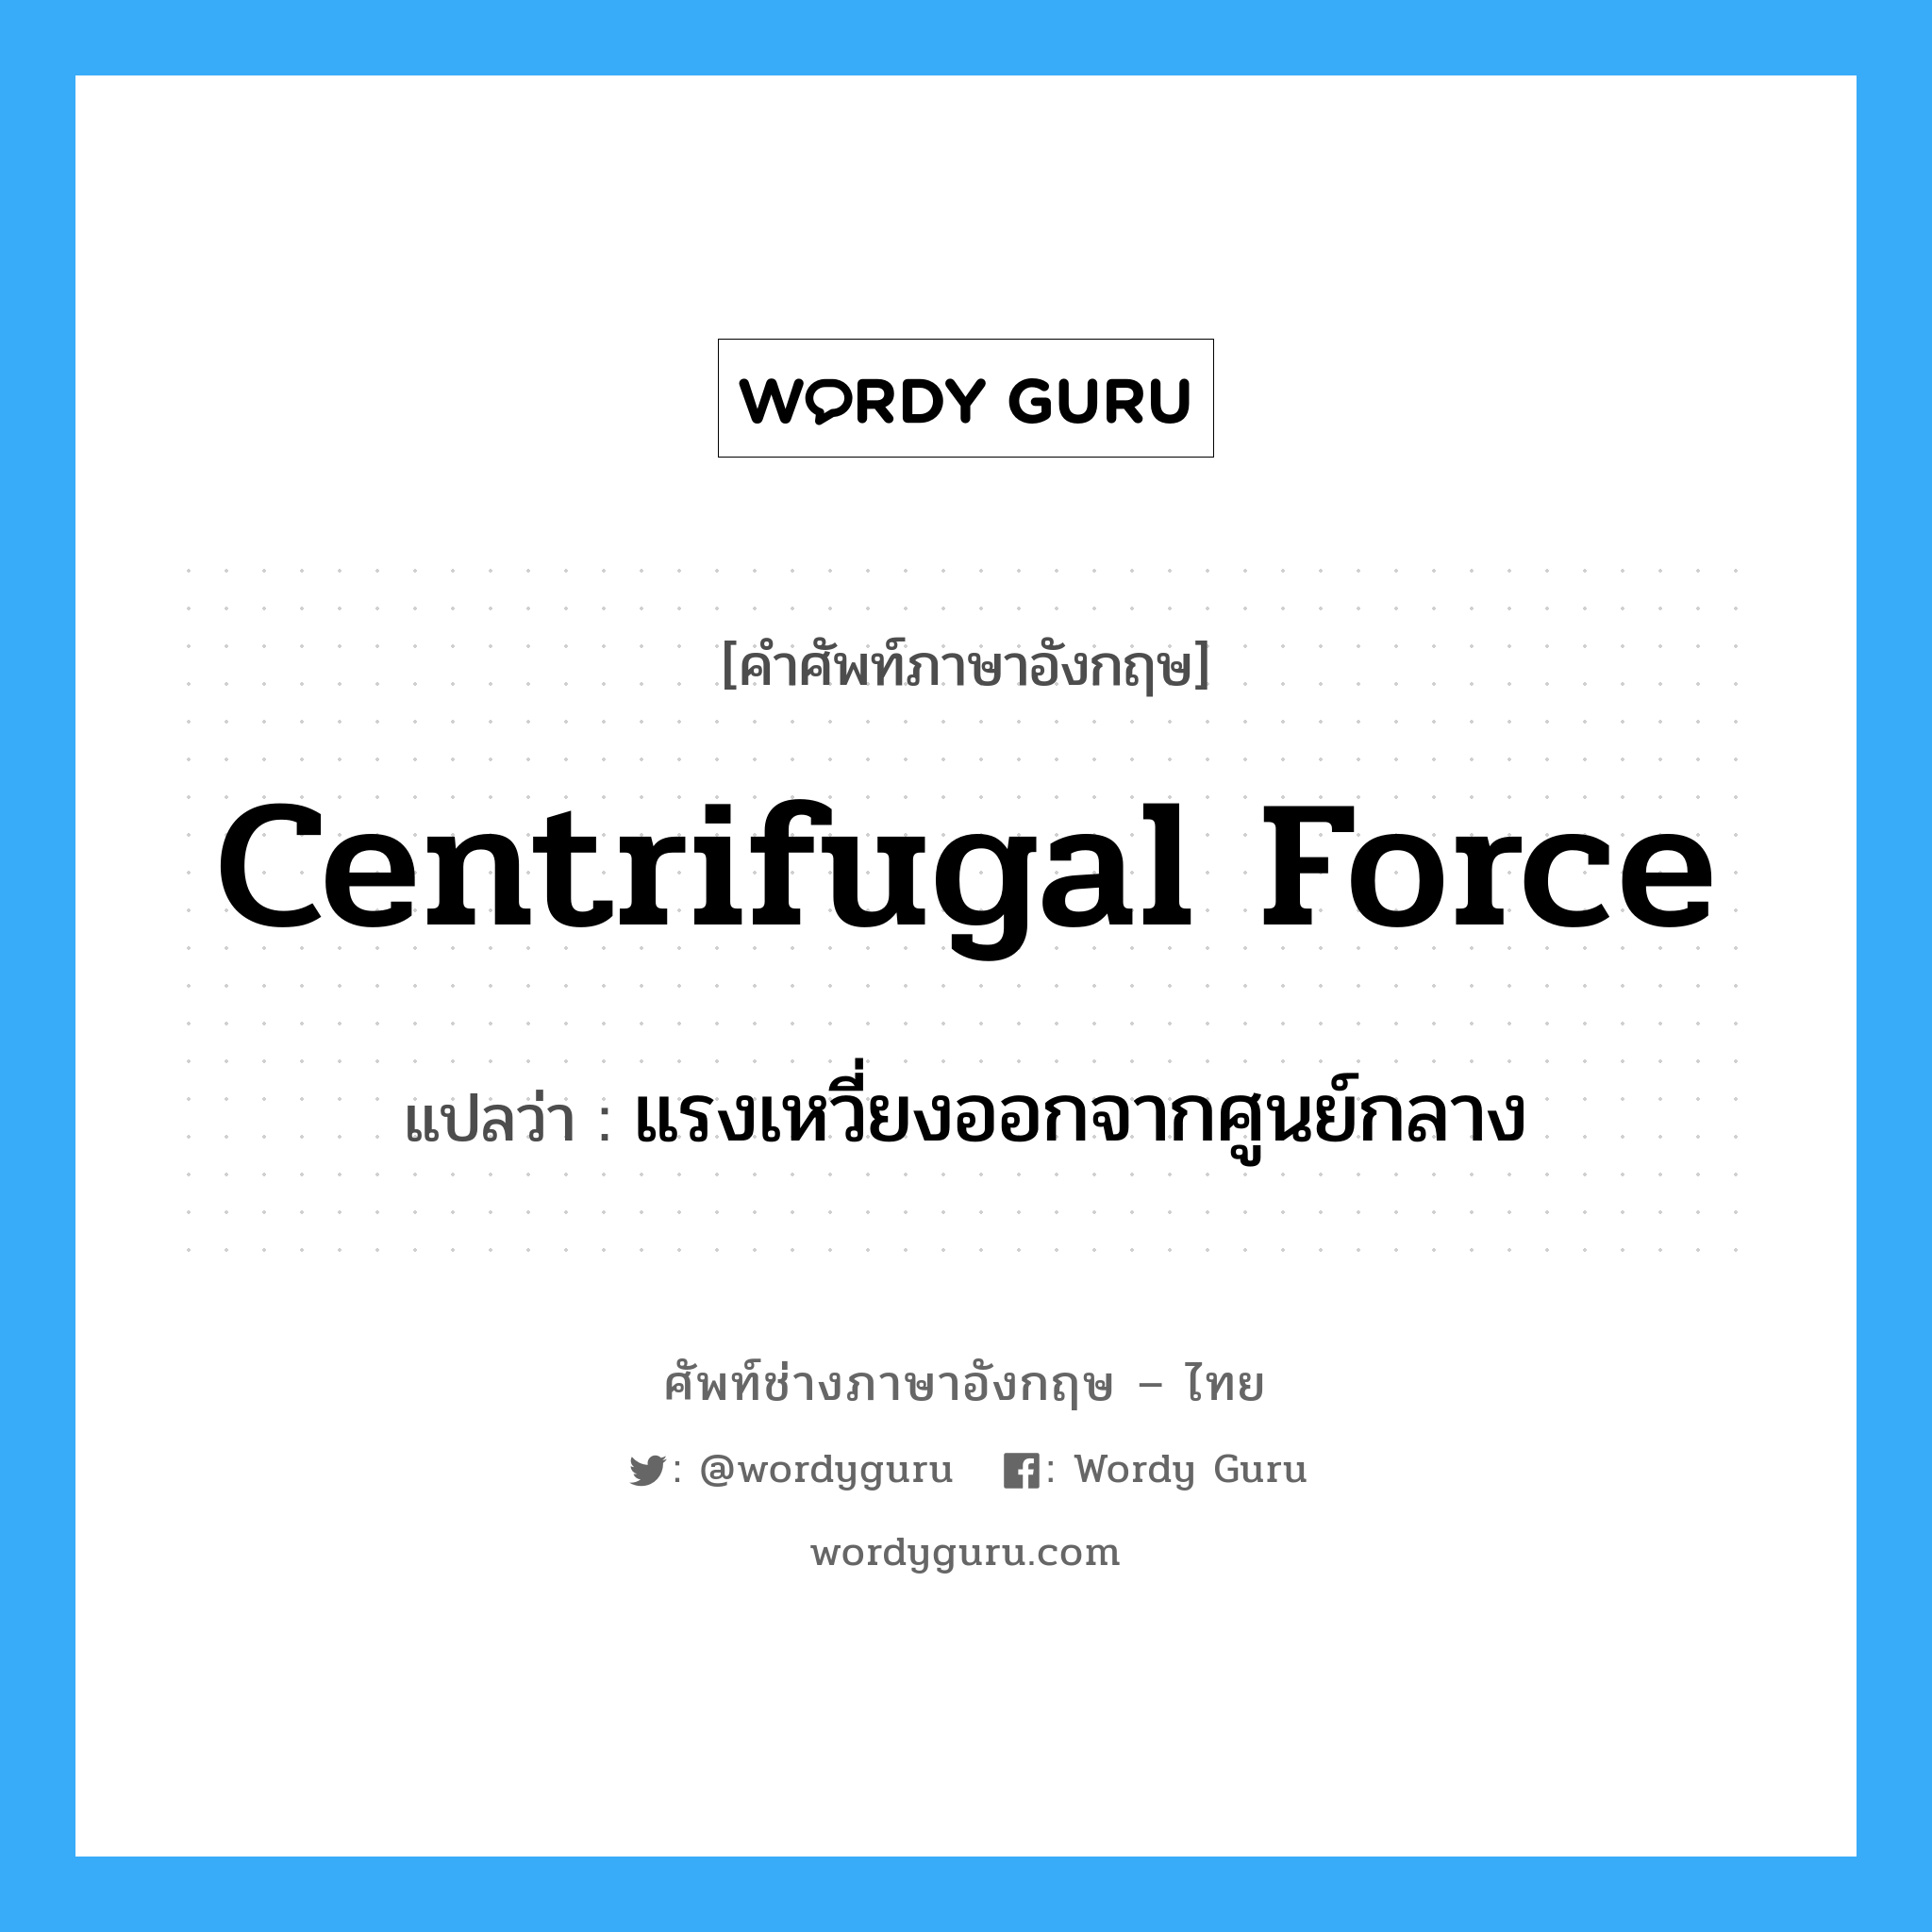 แรงเหวี่ยงออกจากศูนย์กลาง ภาษาอังกฤษ?, คำศัพท์ช่างภาษาอังกฤษ - ไทย แรงเหวี่ยงออกจากศูนย์กลาง คำศัพท์ภาษาอังกฤษ แรงเหวี่ยงออกจากศูนย์กลาง แปลว่า centrifugal force